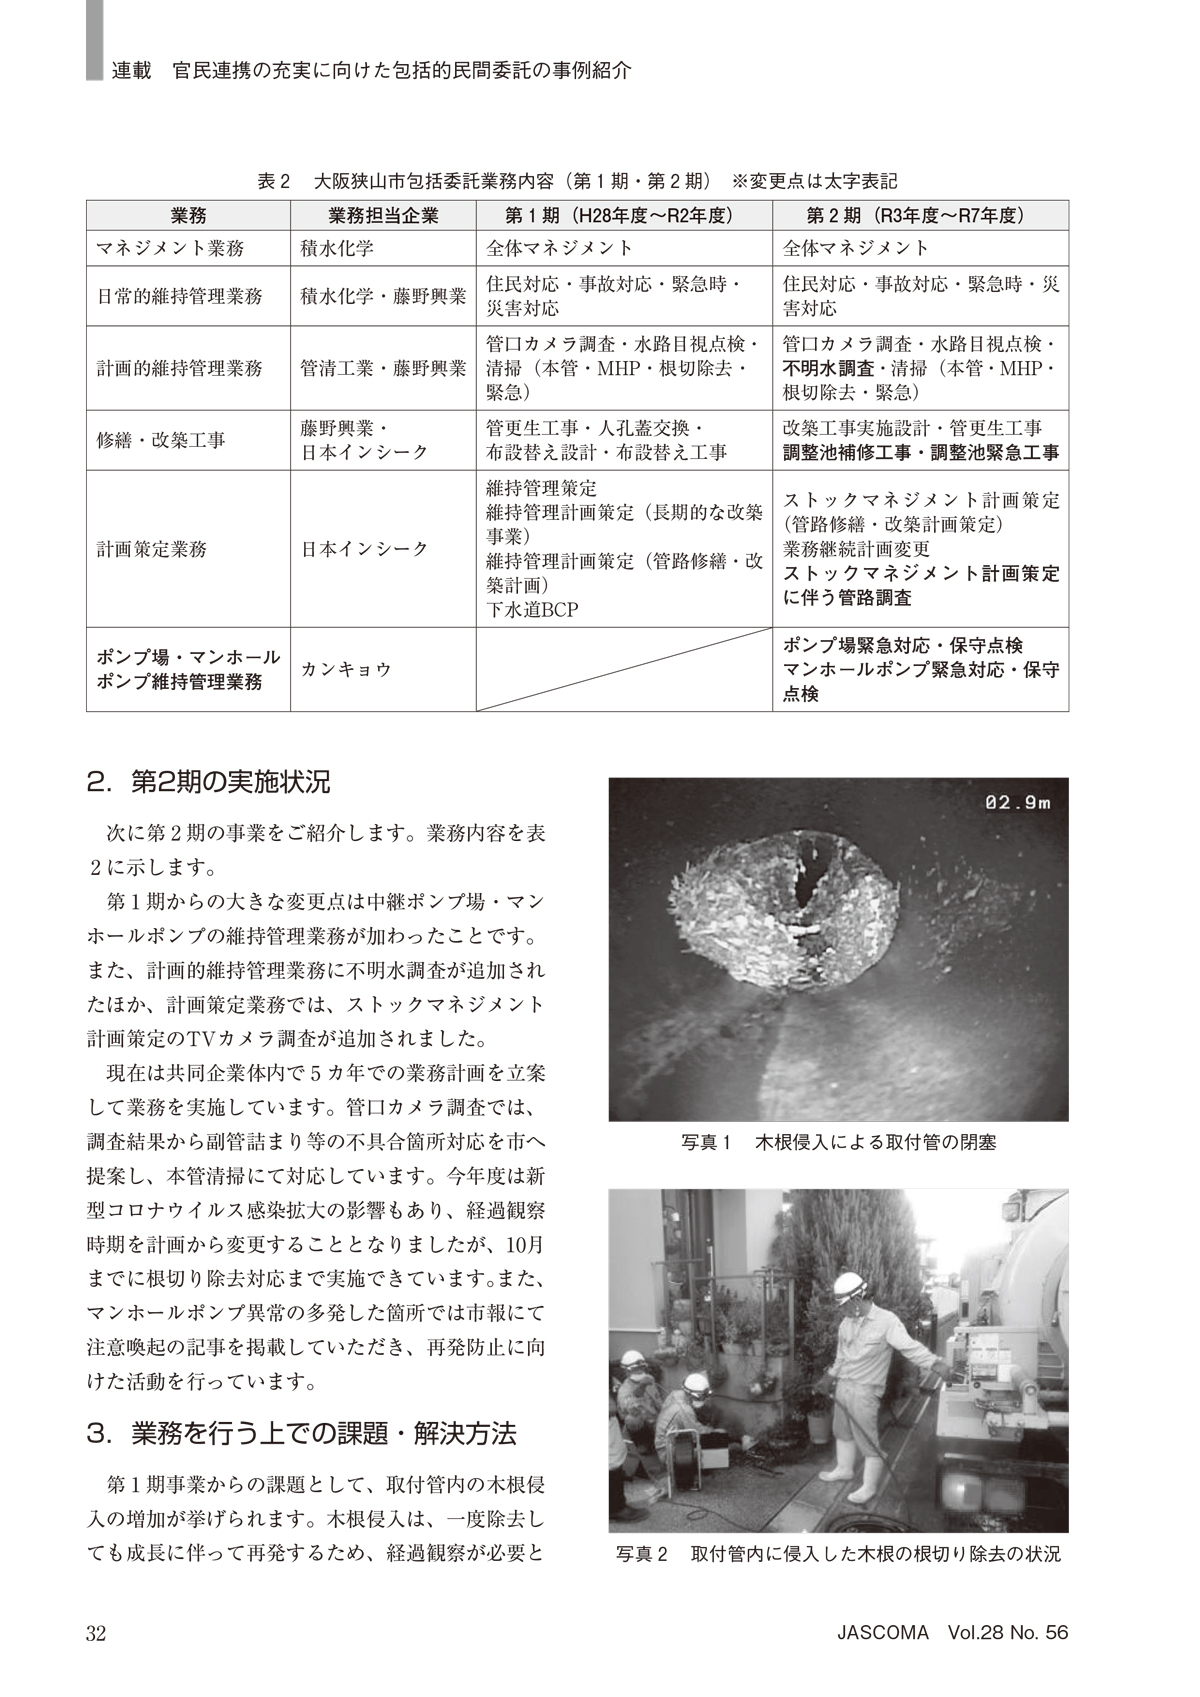 日本教育新聞にてスロン耐火VPパイプが紹介